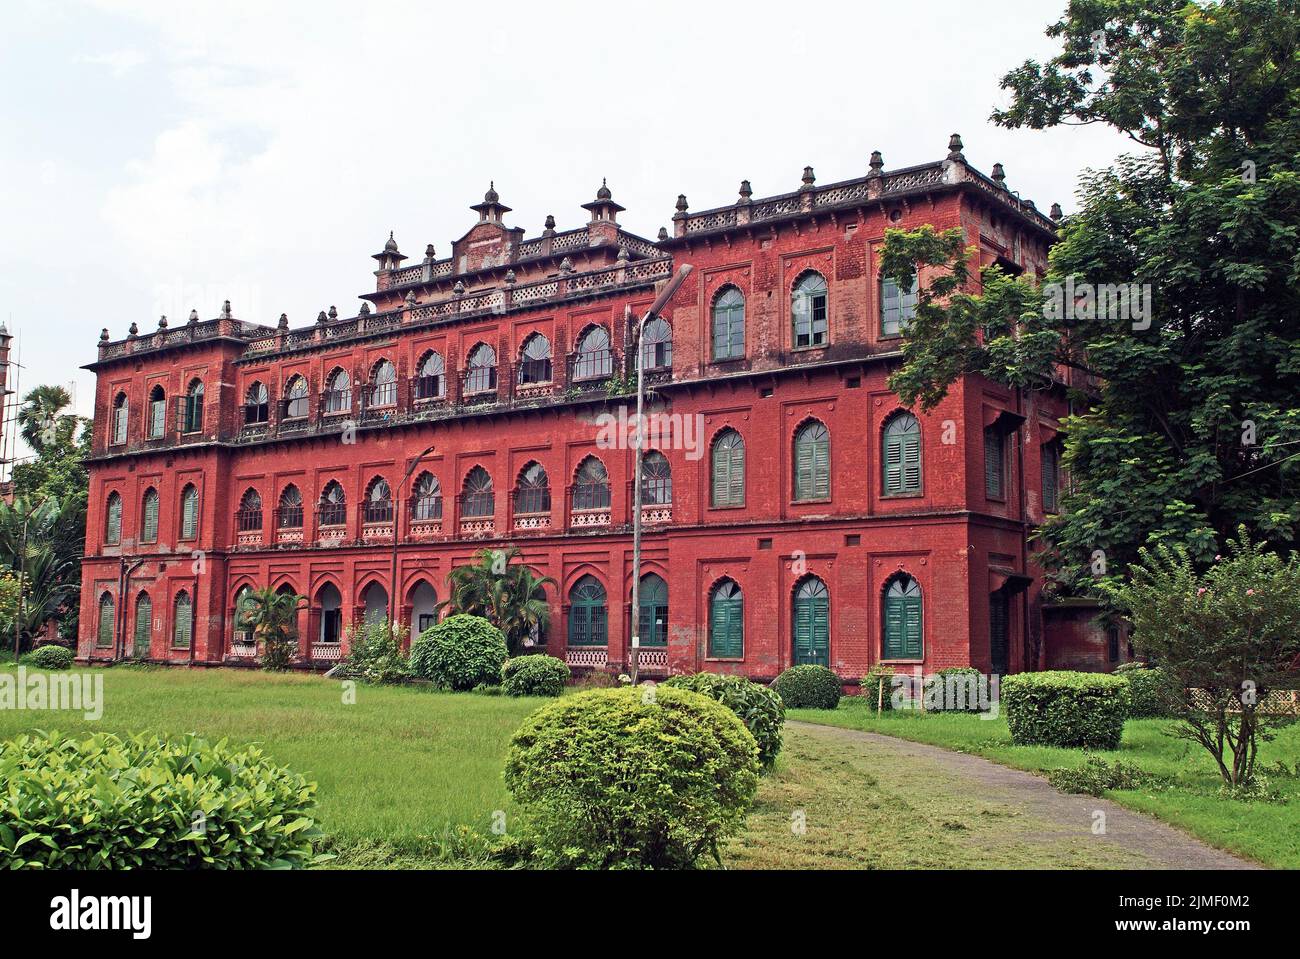 Dhaka, Bangladesh - 17 septembre 2007 : ancienne résidence de Lord Curzon, qui fait actuellement partie de l'Université de Dhaka Banque D'Images